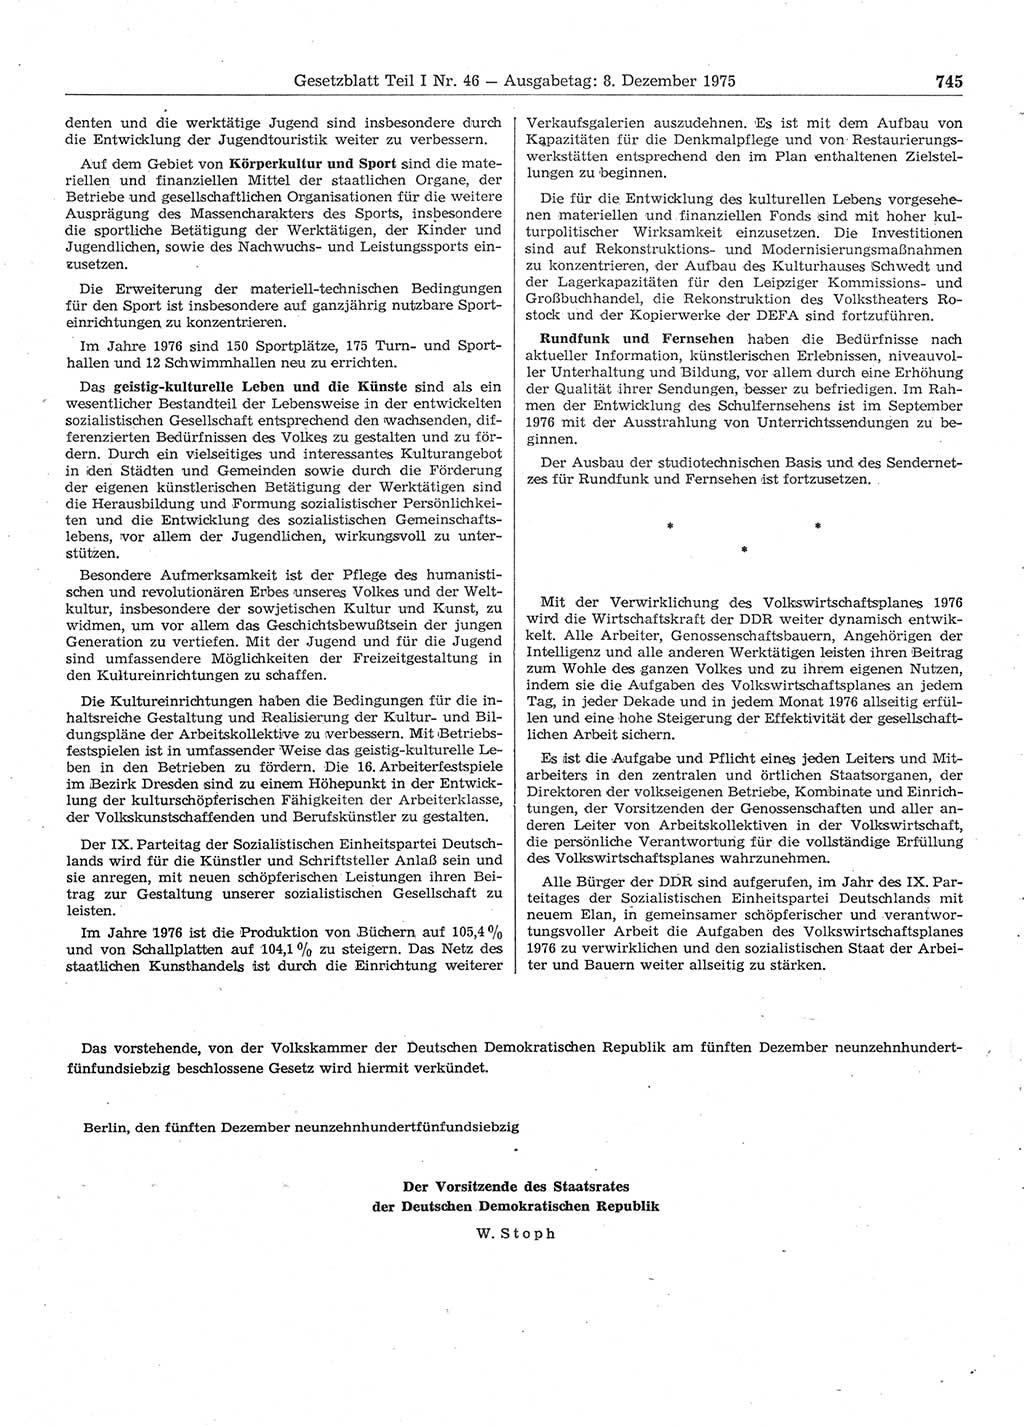 Gesetzblatt (GBl.) der Deutschen Demokratischen Republik (DDR) Teil Ⅰ 1975, Seite 745 (GBl. DDR Ⅰ 1975, S. 745)